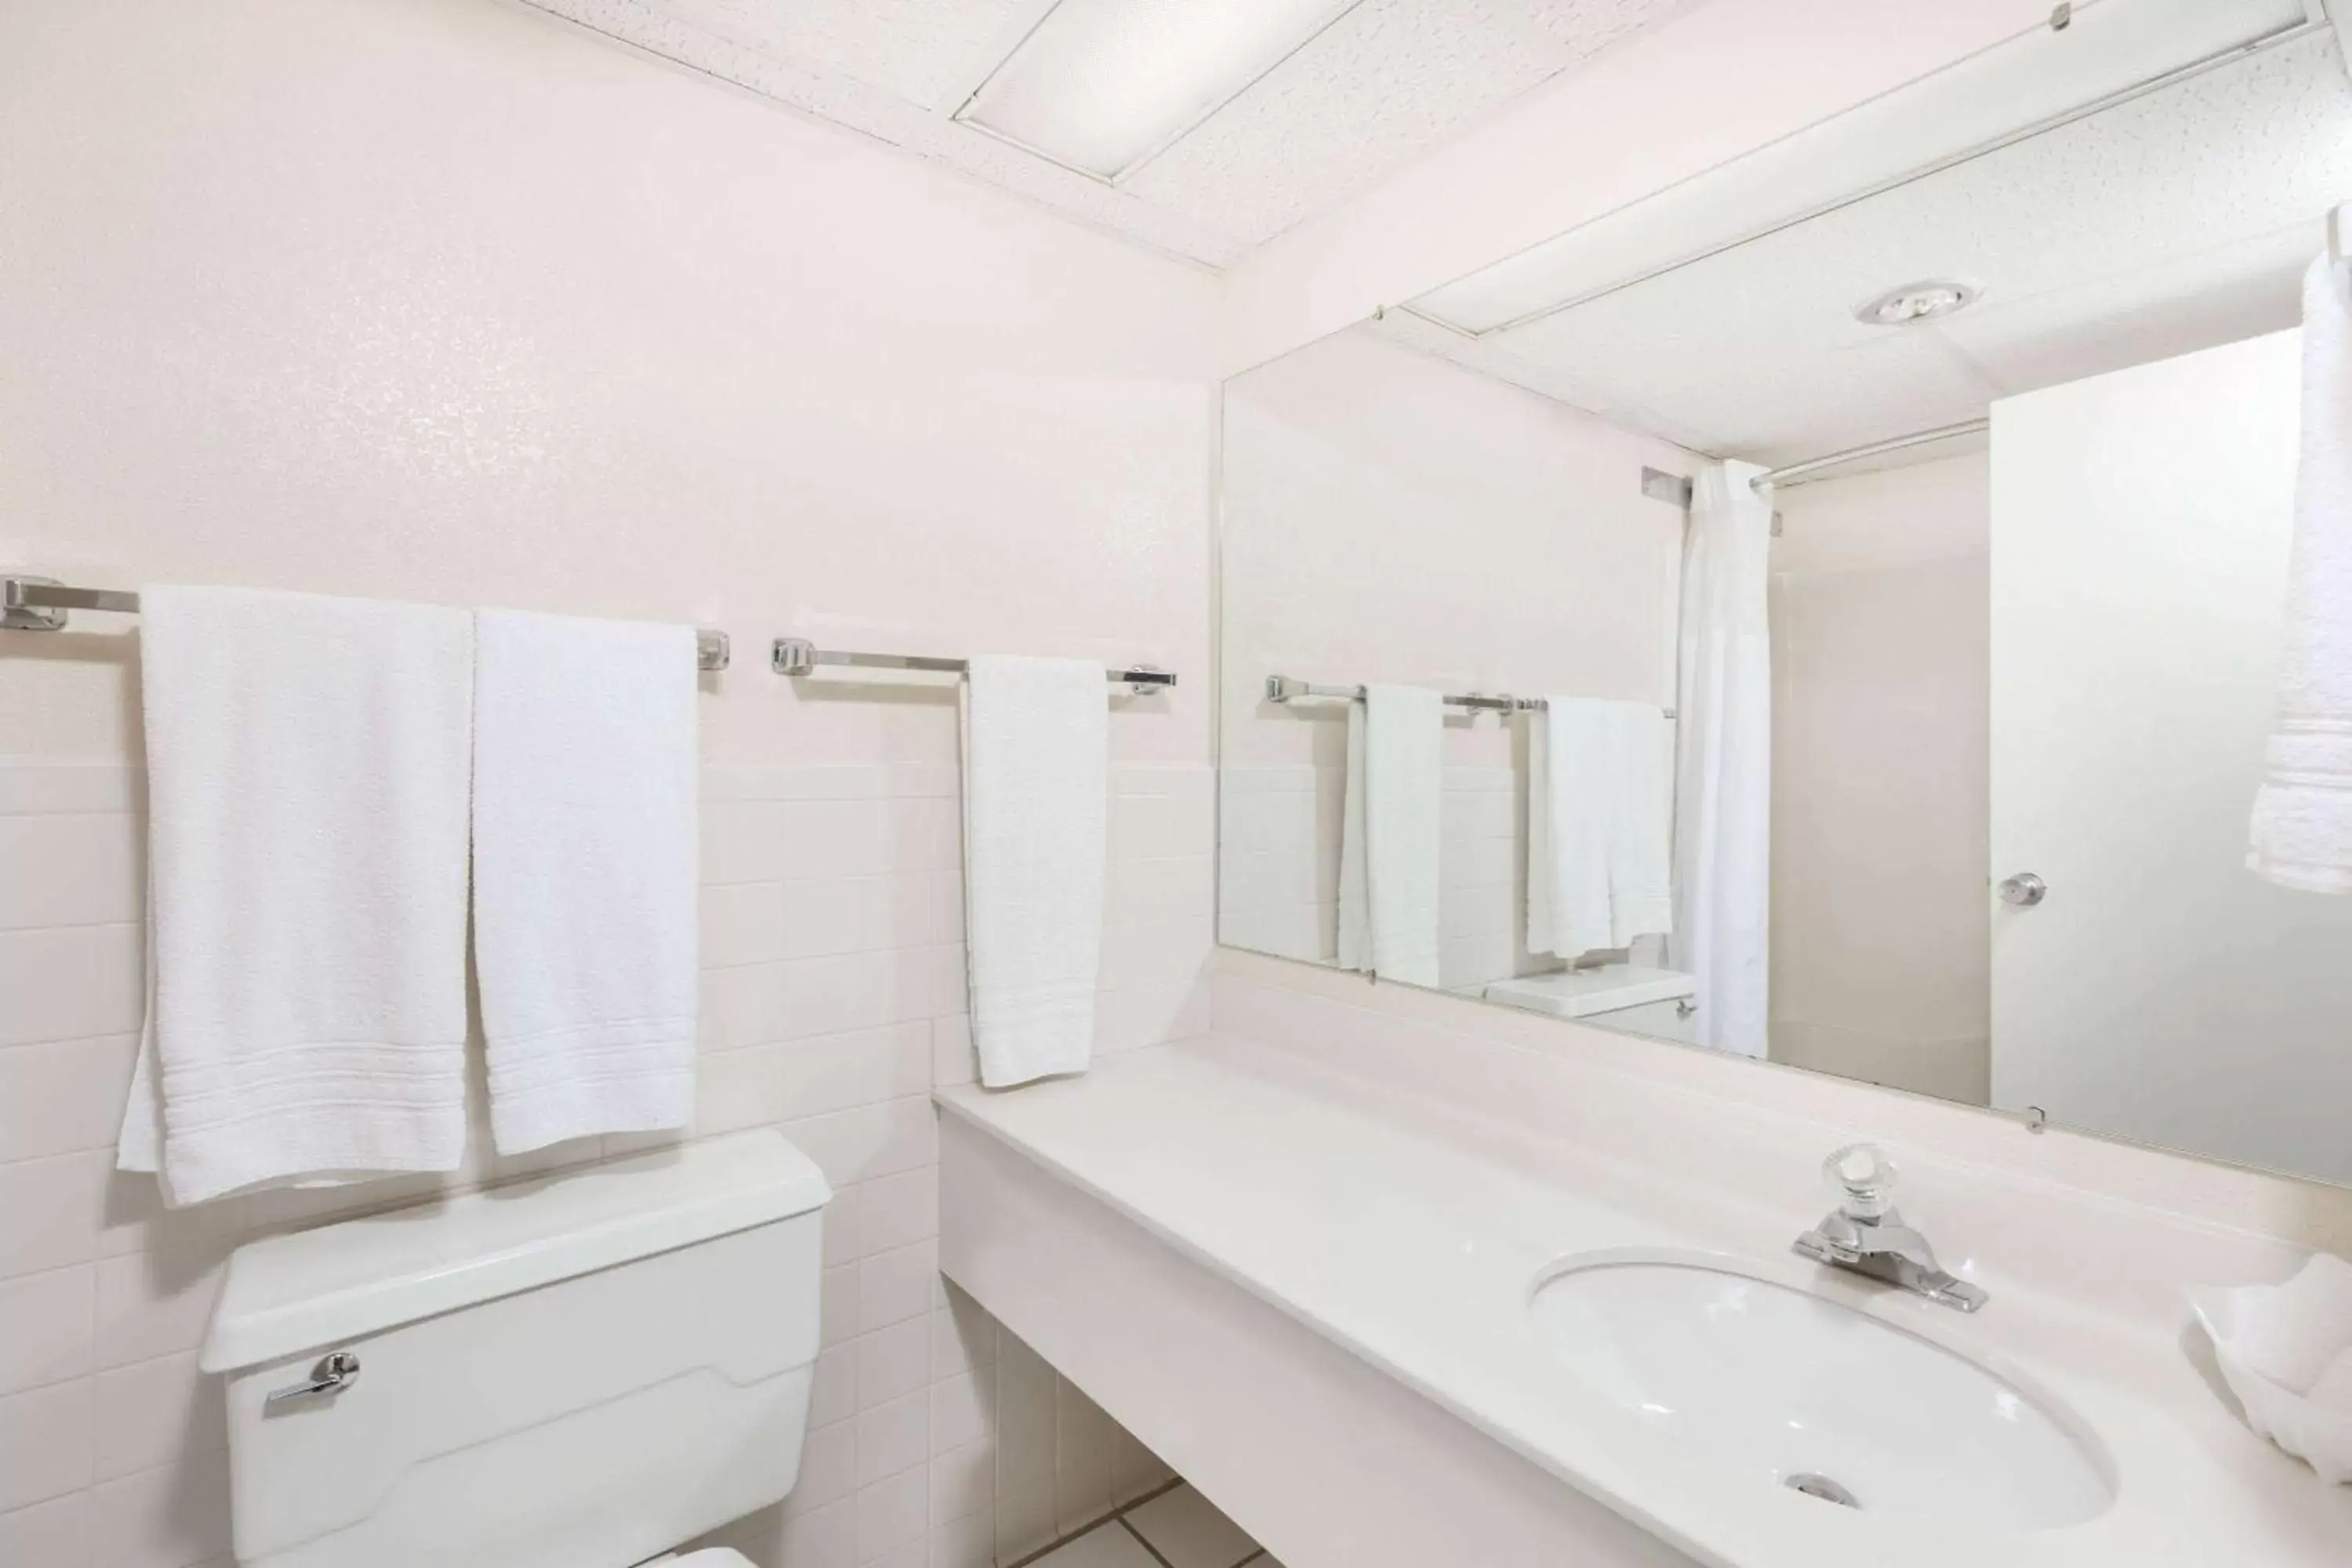 Bathroom in Days Inn by Wyndham Grand Island I-80